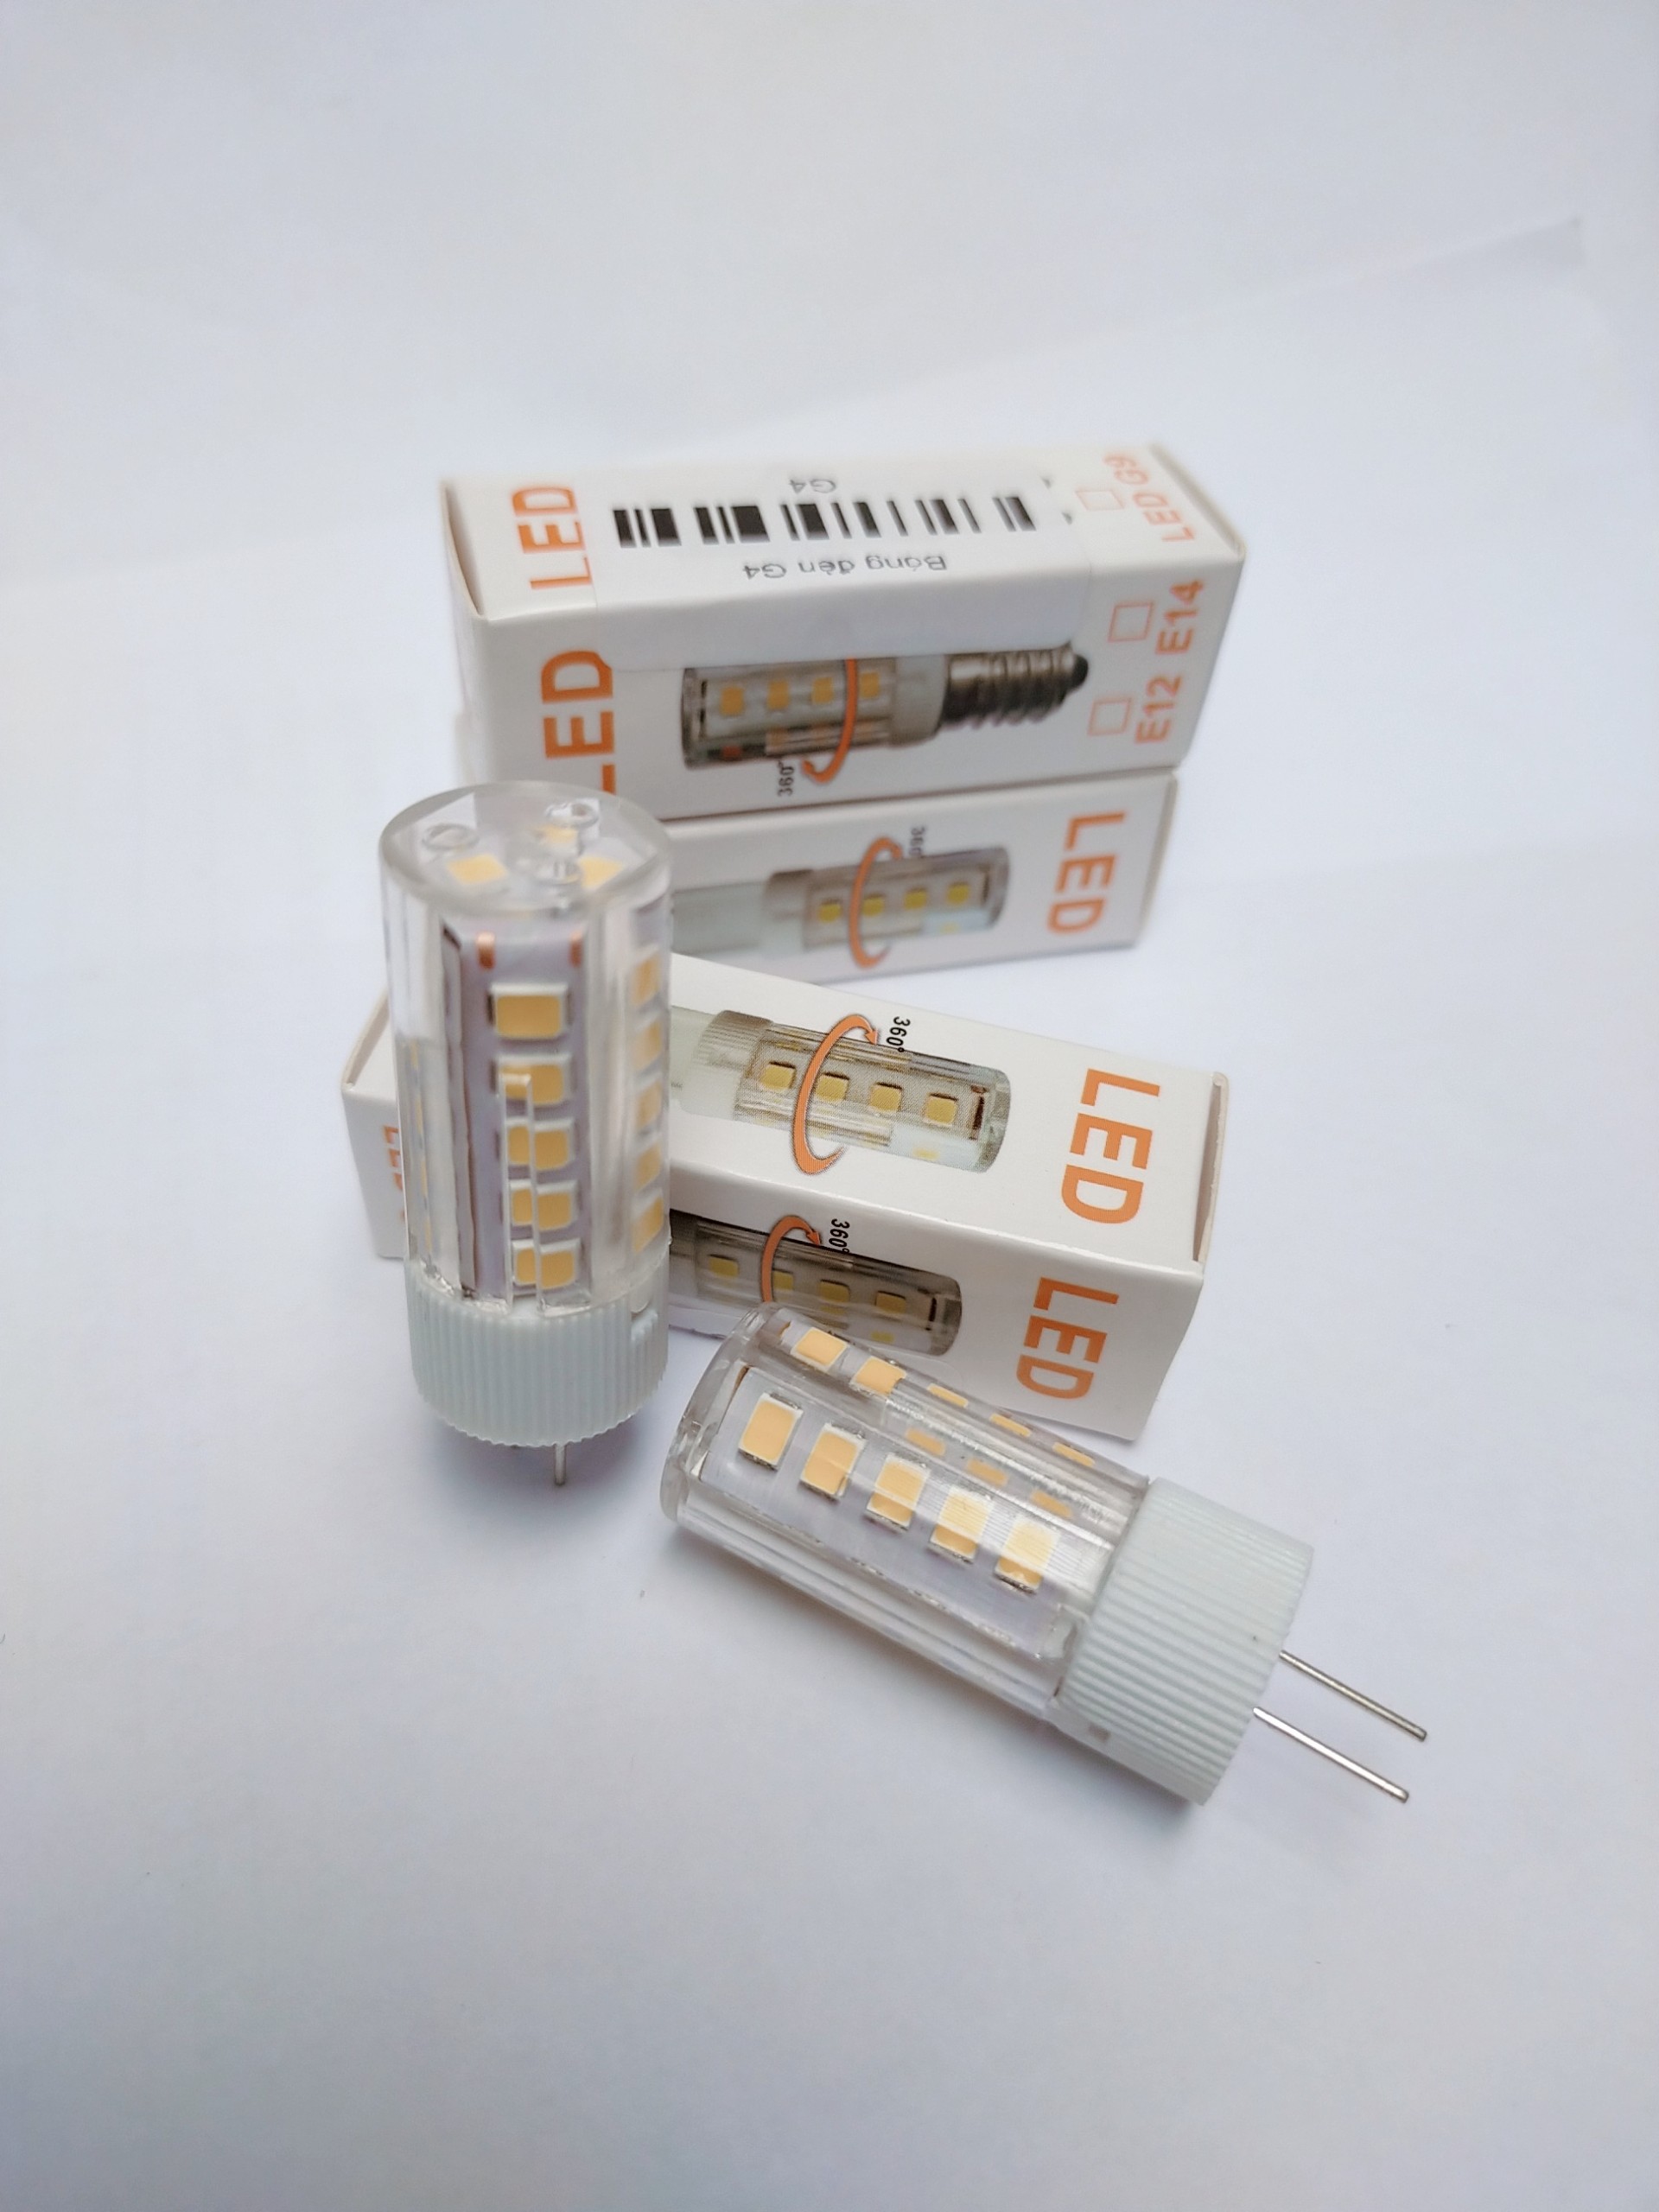 Bóng đèn LED ghim ngón TAMOGA EVIS G4 3W - 220V nhỏ gọn tiện dụng. LED chân kim cho đèn trang trí